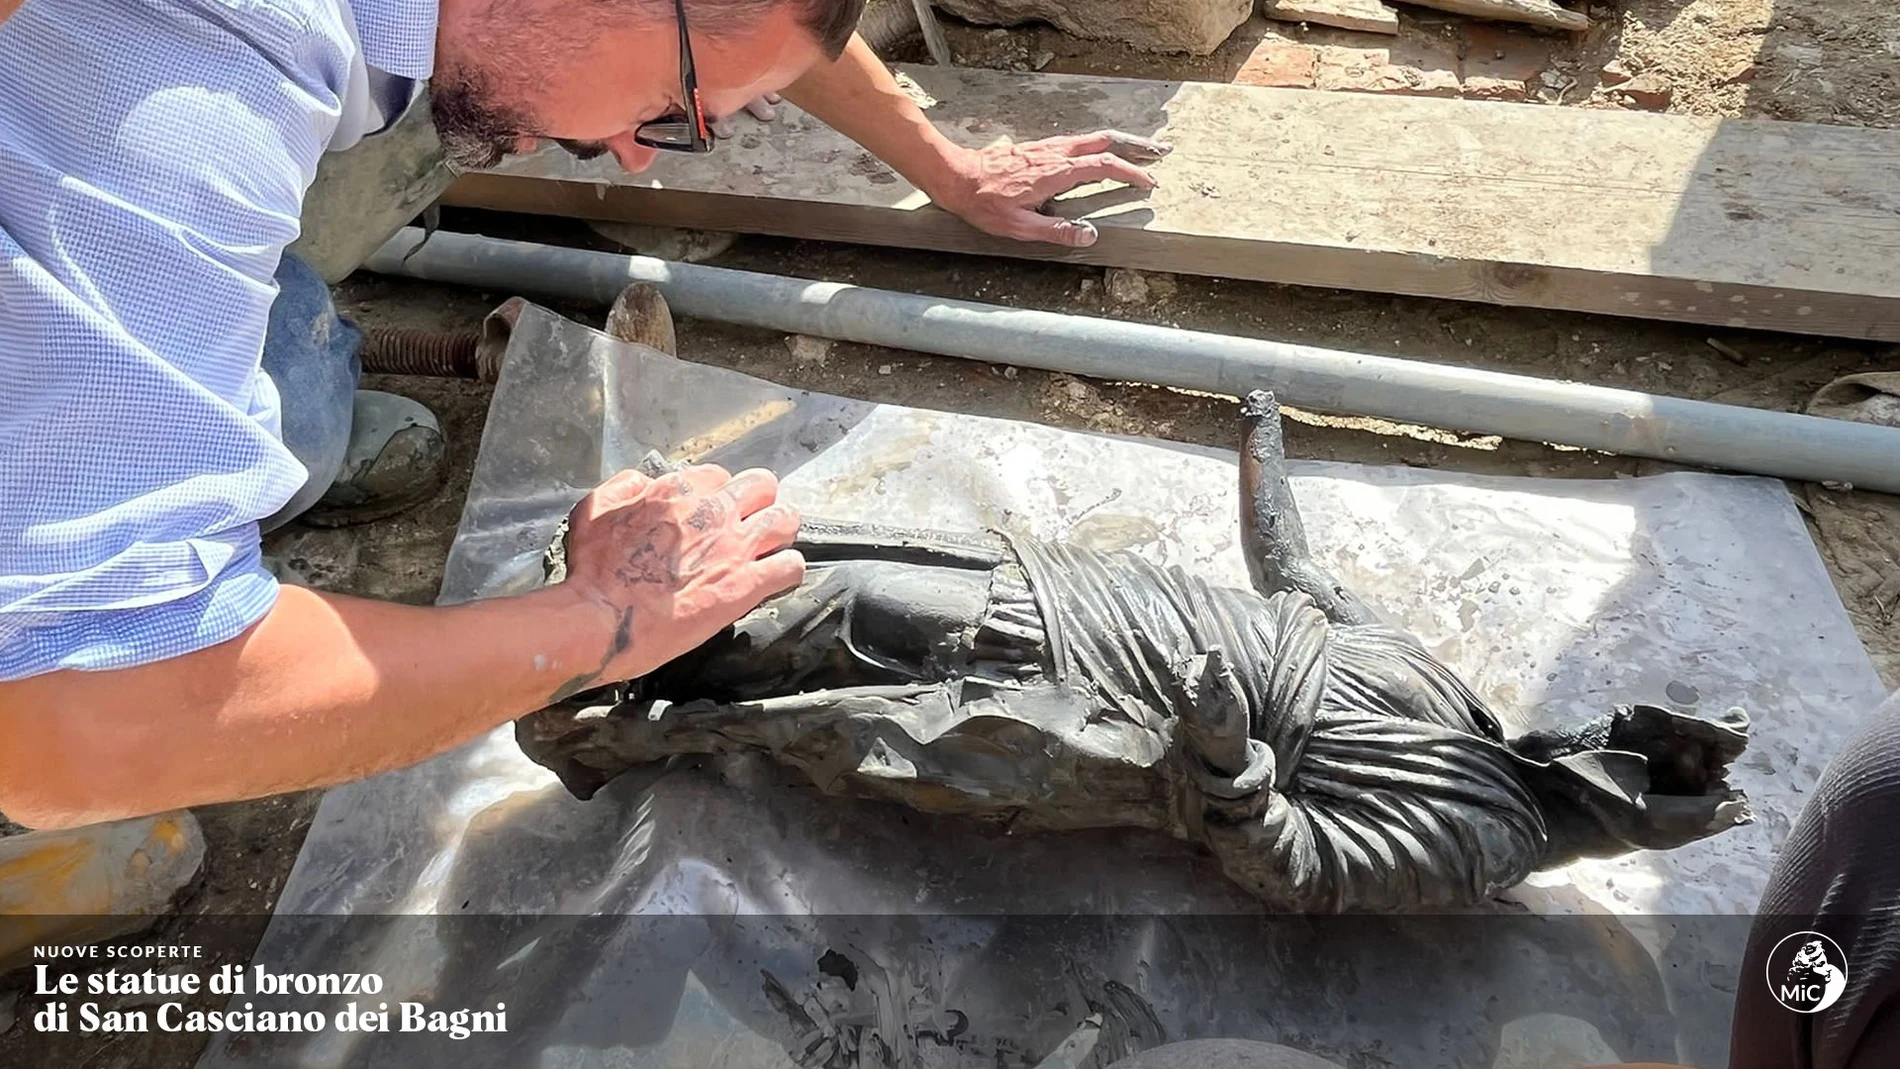 Extraordinario hallazgo en Italia: sacan del barro más de una veintena de estatuas romanas y etruscas intactas